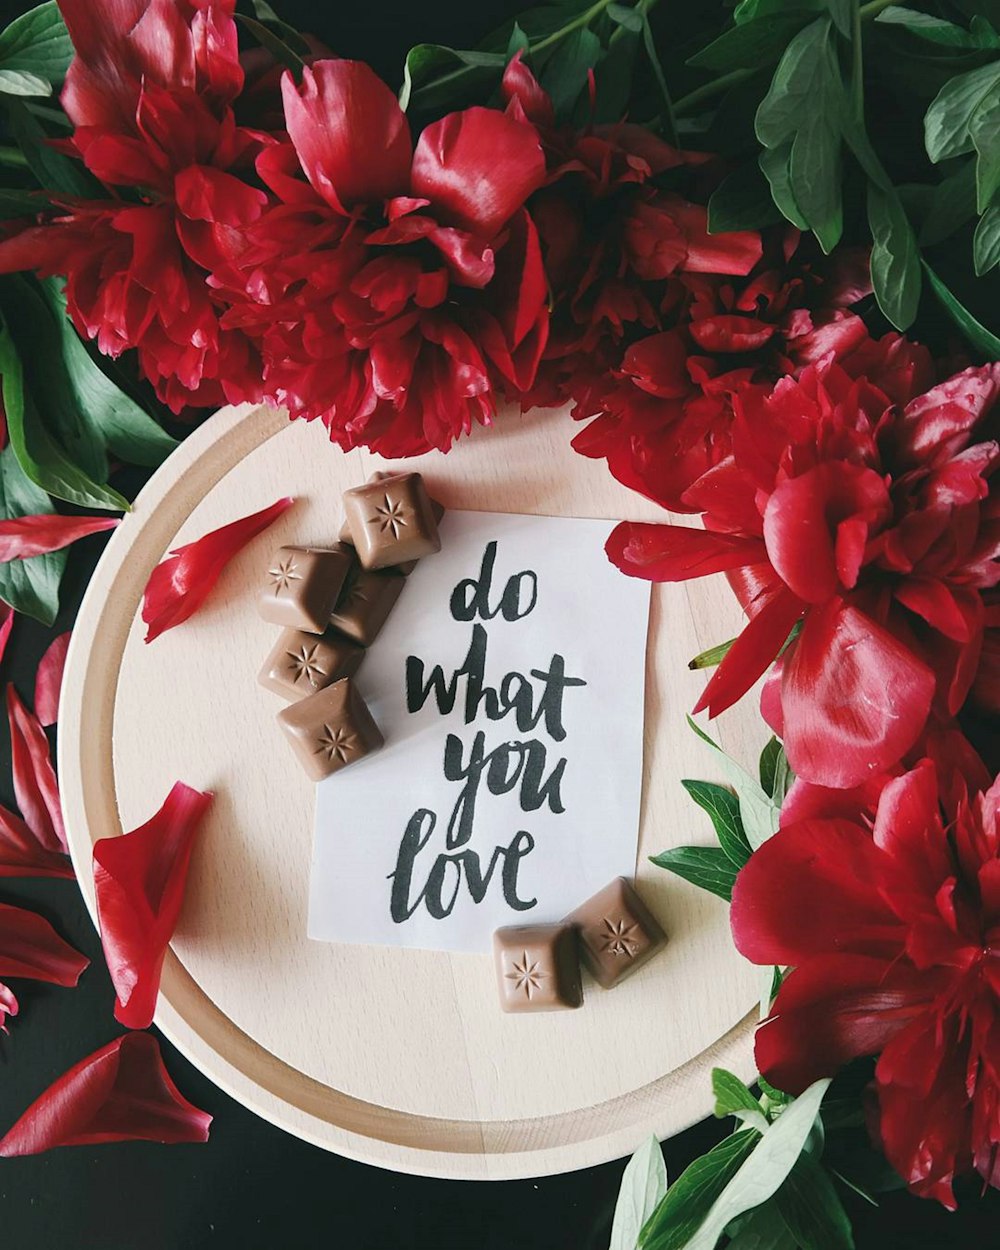 Una nota en un pedazo de papel encima de un plato junto a flores rojas que dice "Haz lo que amas".